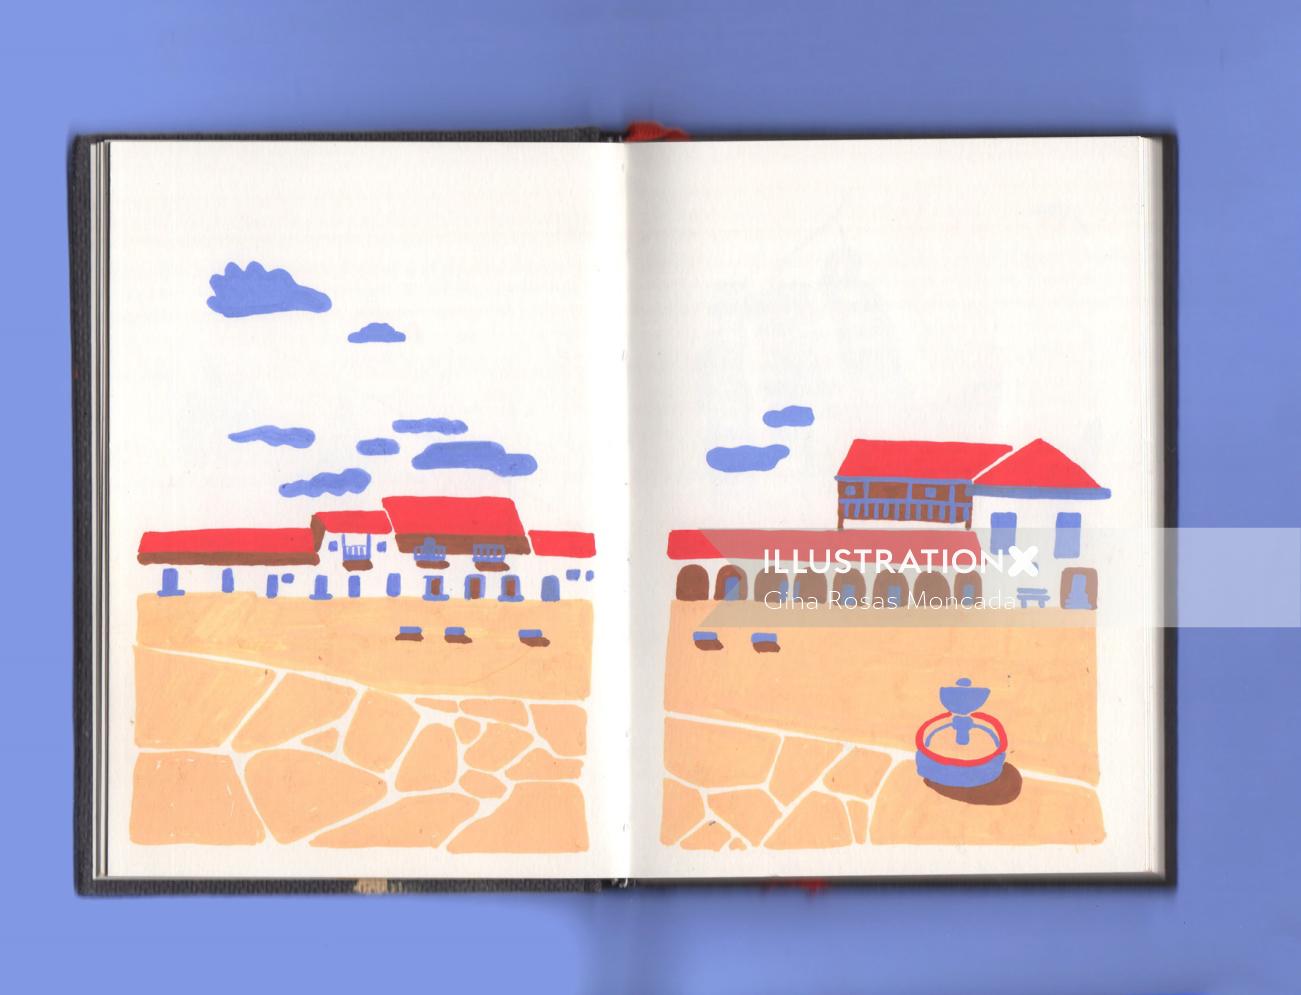 Book page design of Villa de Leyva